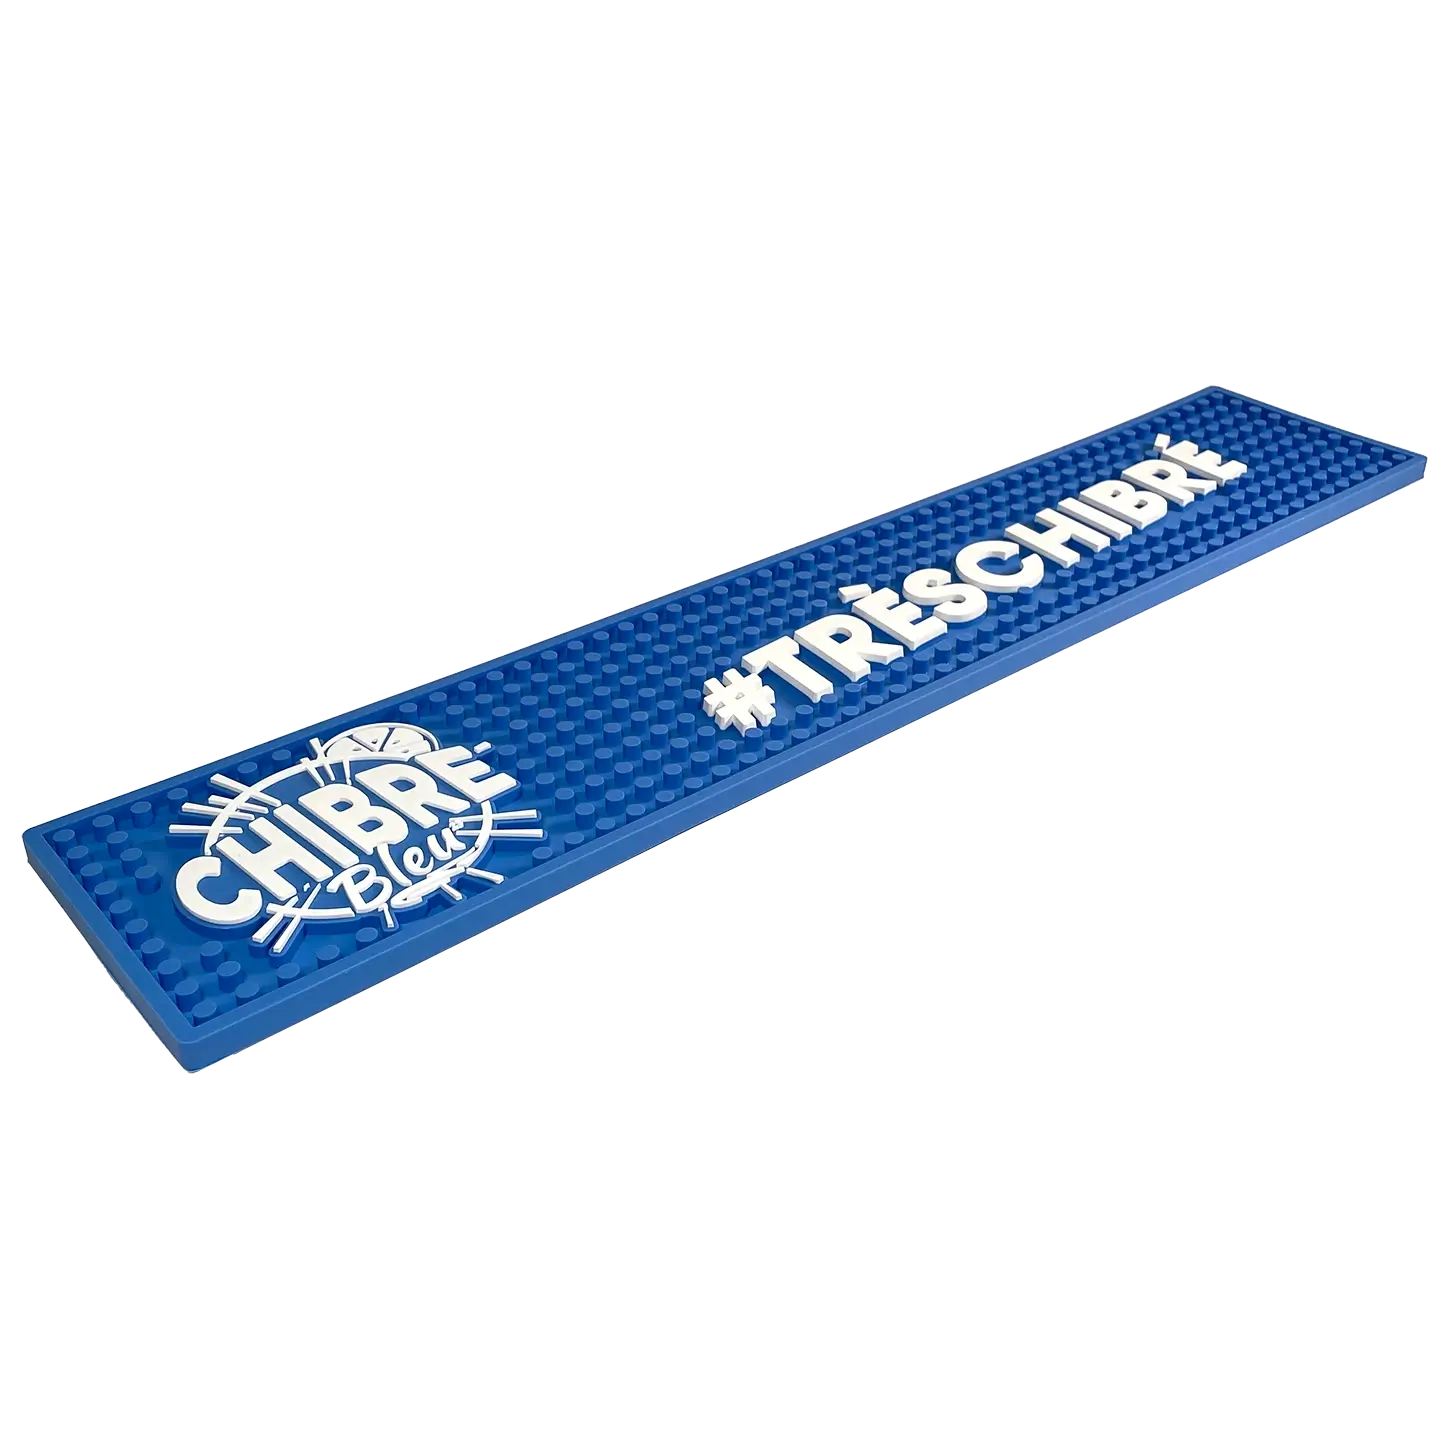 le tapis de bar chibre bleu, avec le logo et un hastag Très chibré